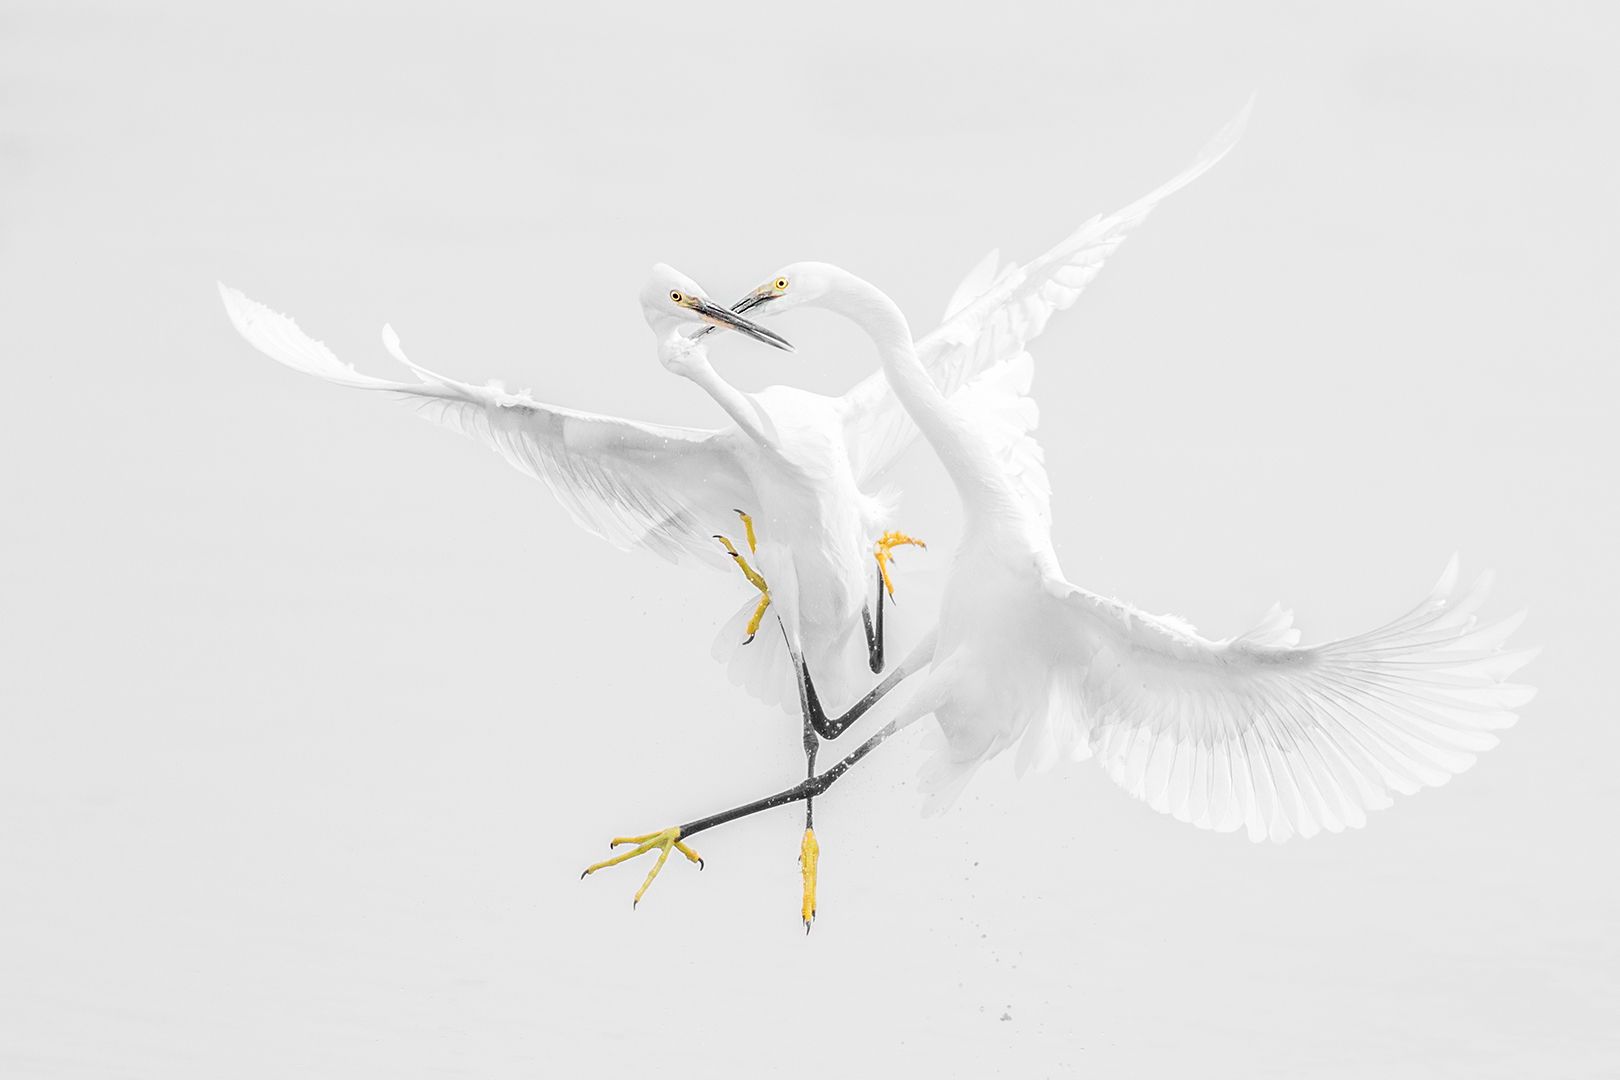 Egrets Fight